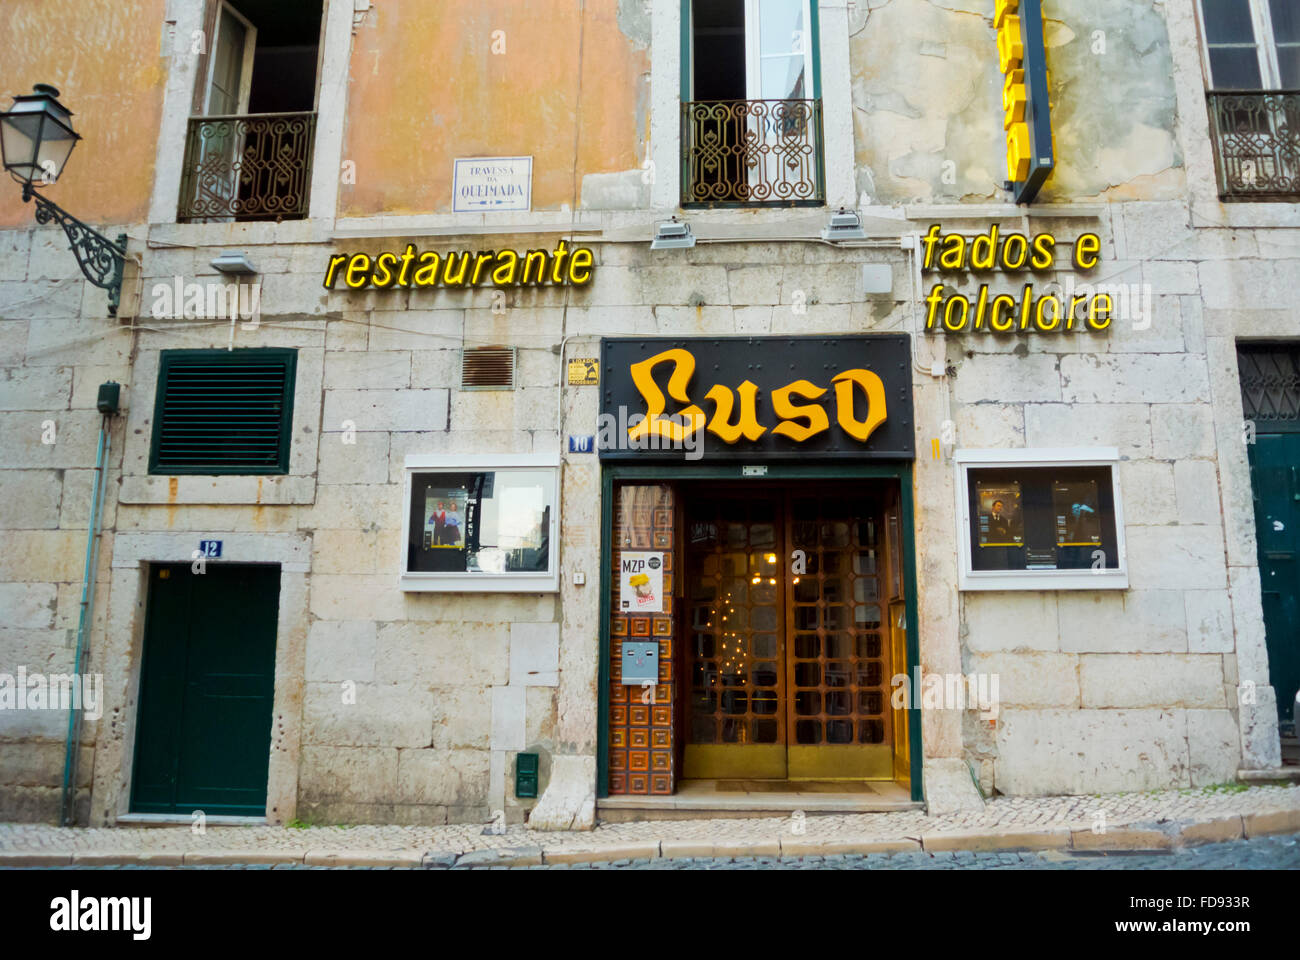 Luso, Fado Restaurant, Bairro Alto, Lissabon, Portugal Stockfoto